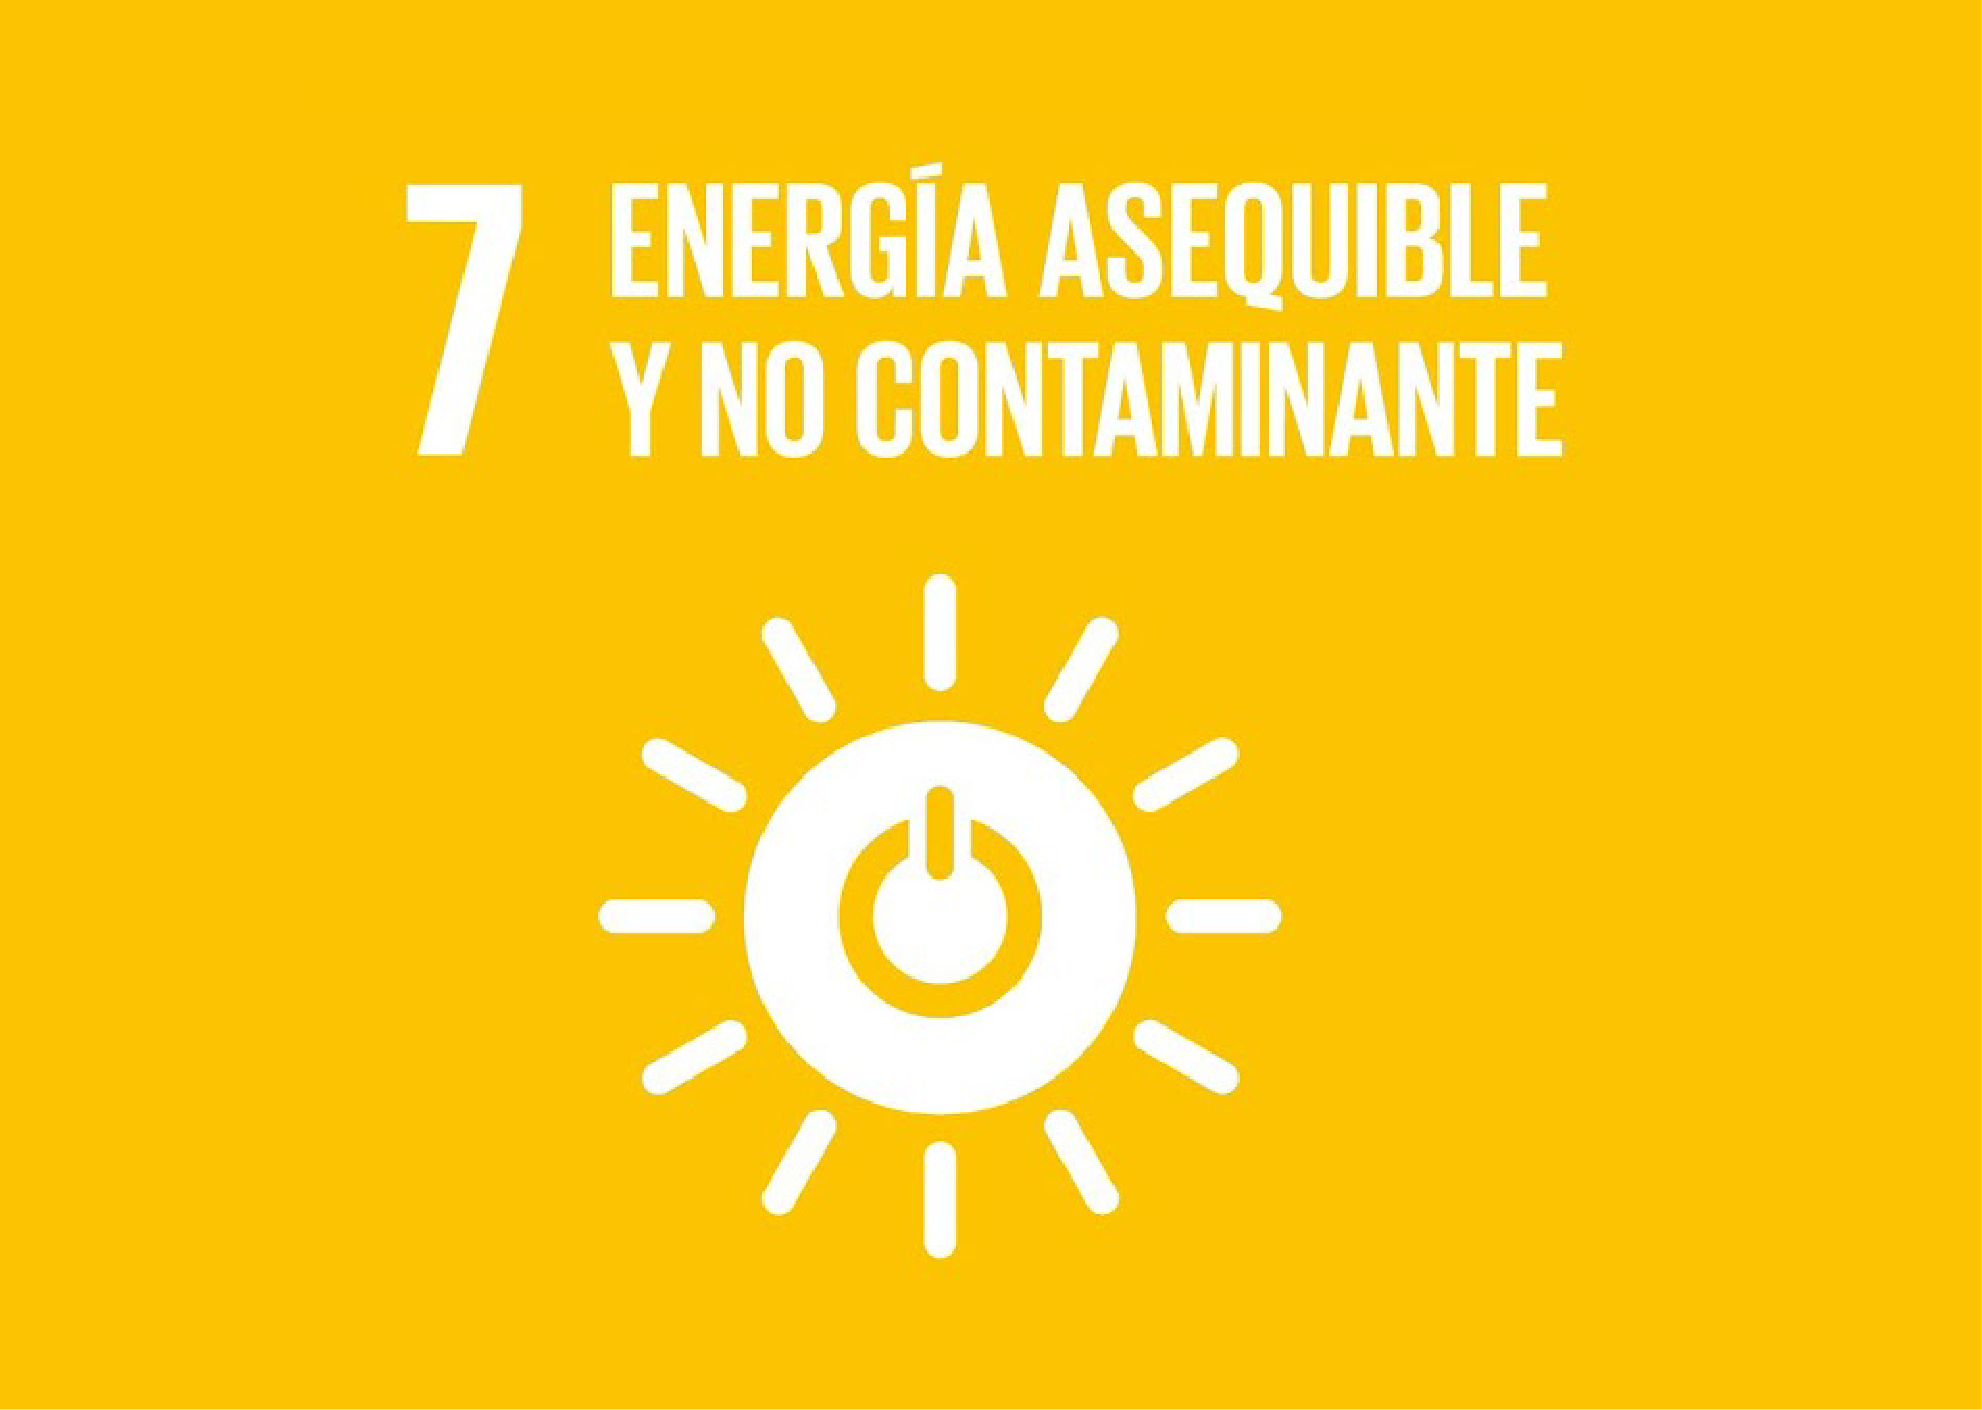 ODS 7 – Energia asequible y no contaminante